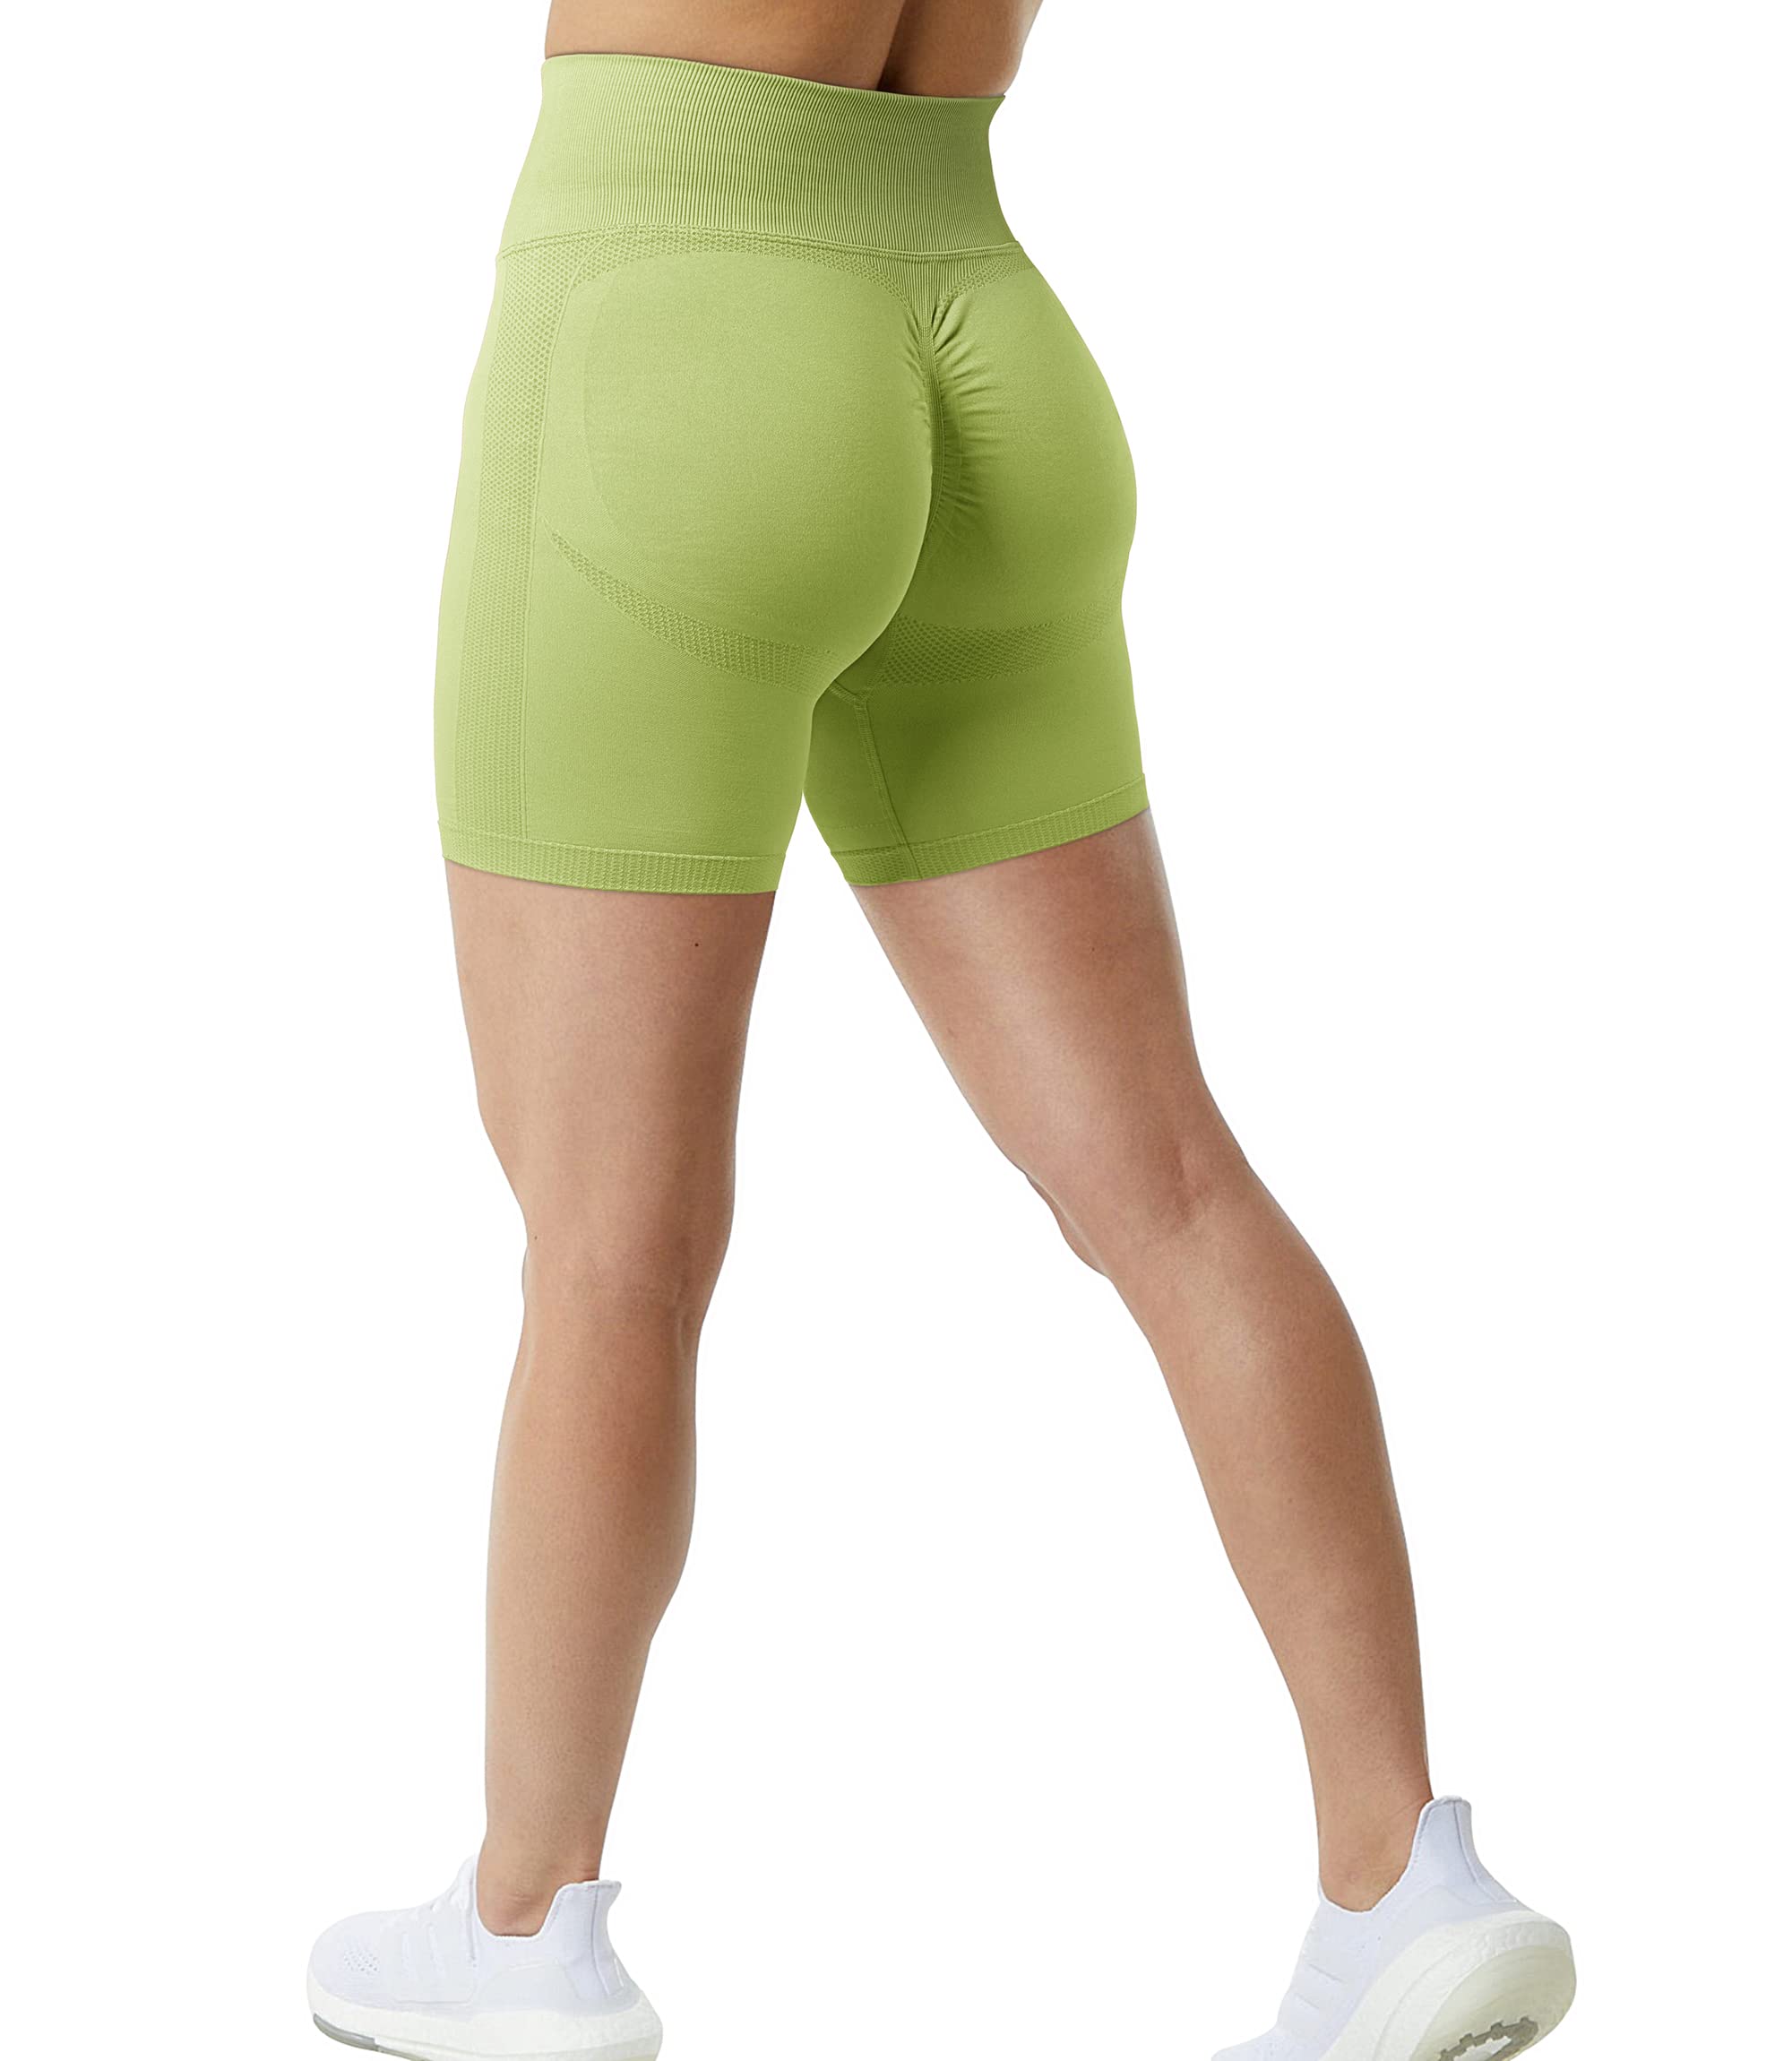 RQYYD Clearance Women's Seamless Scrunch Butt Lift Biker Shorts High Waist  Booty Contour Workout Yoga Gym Shorts(Green,L) 